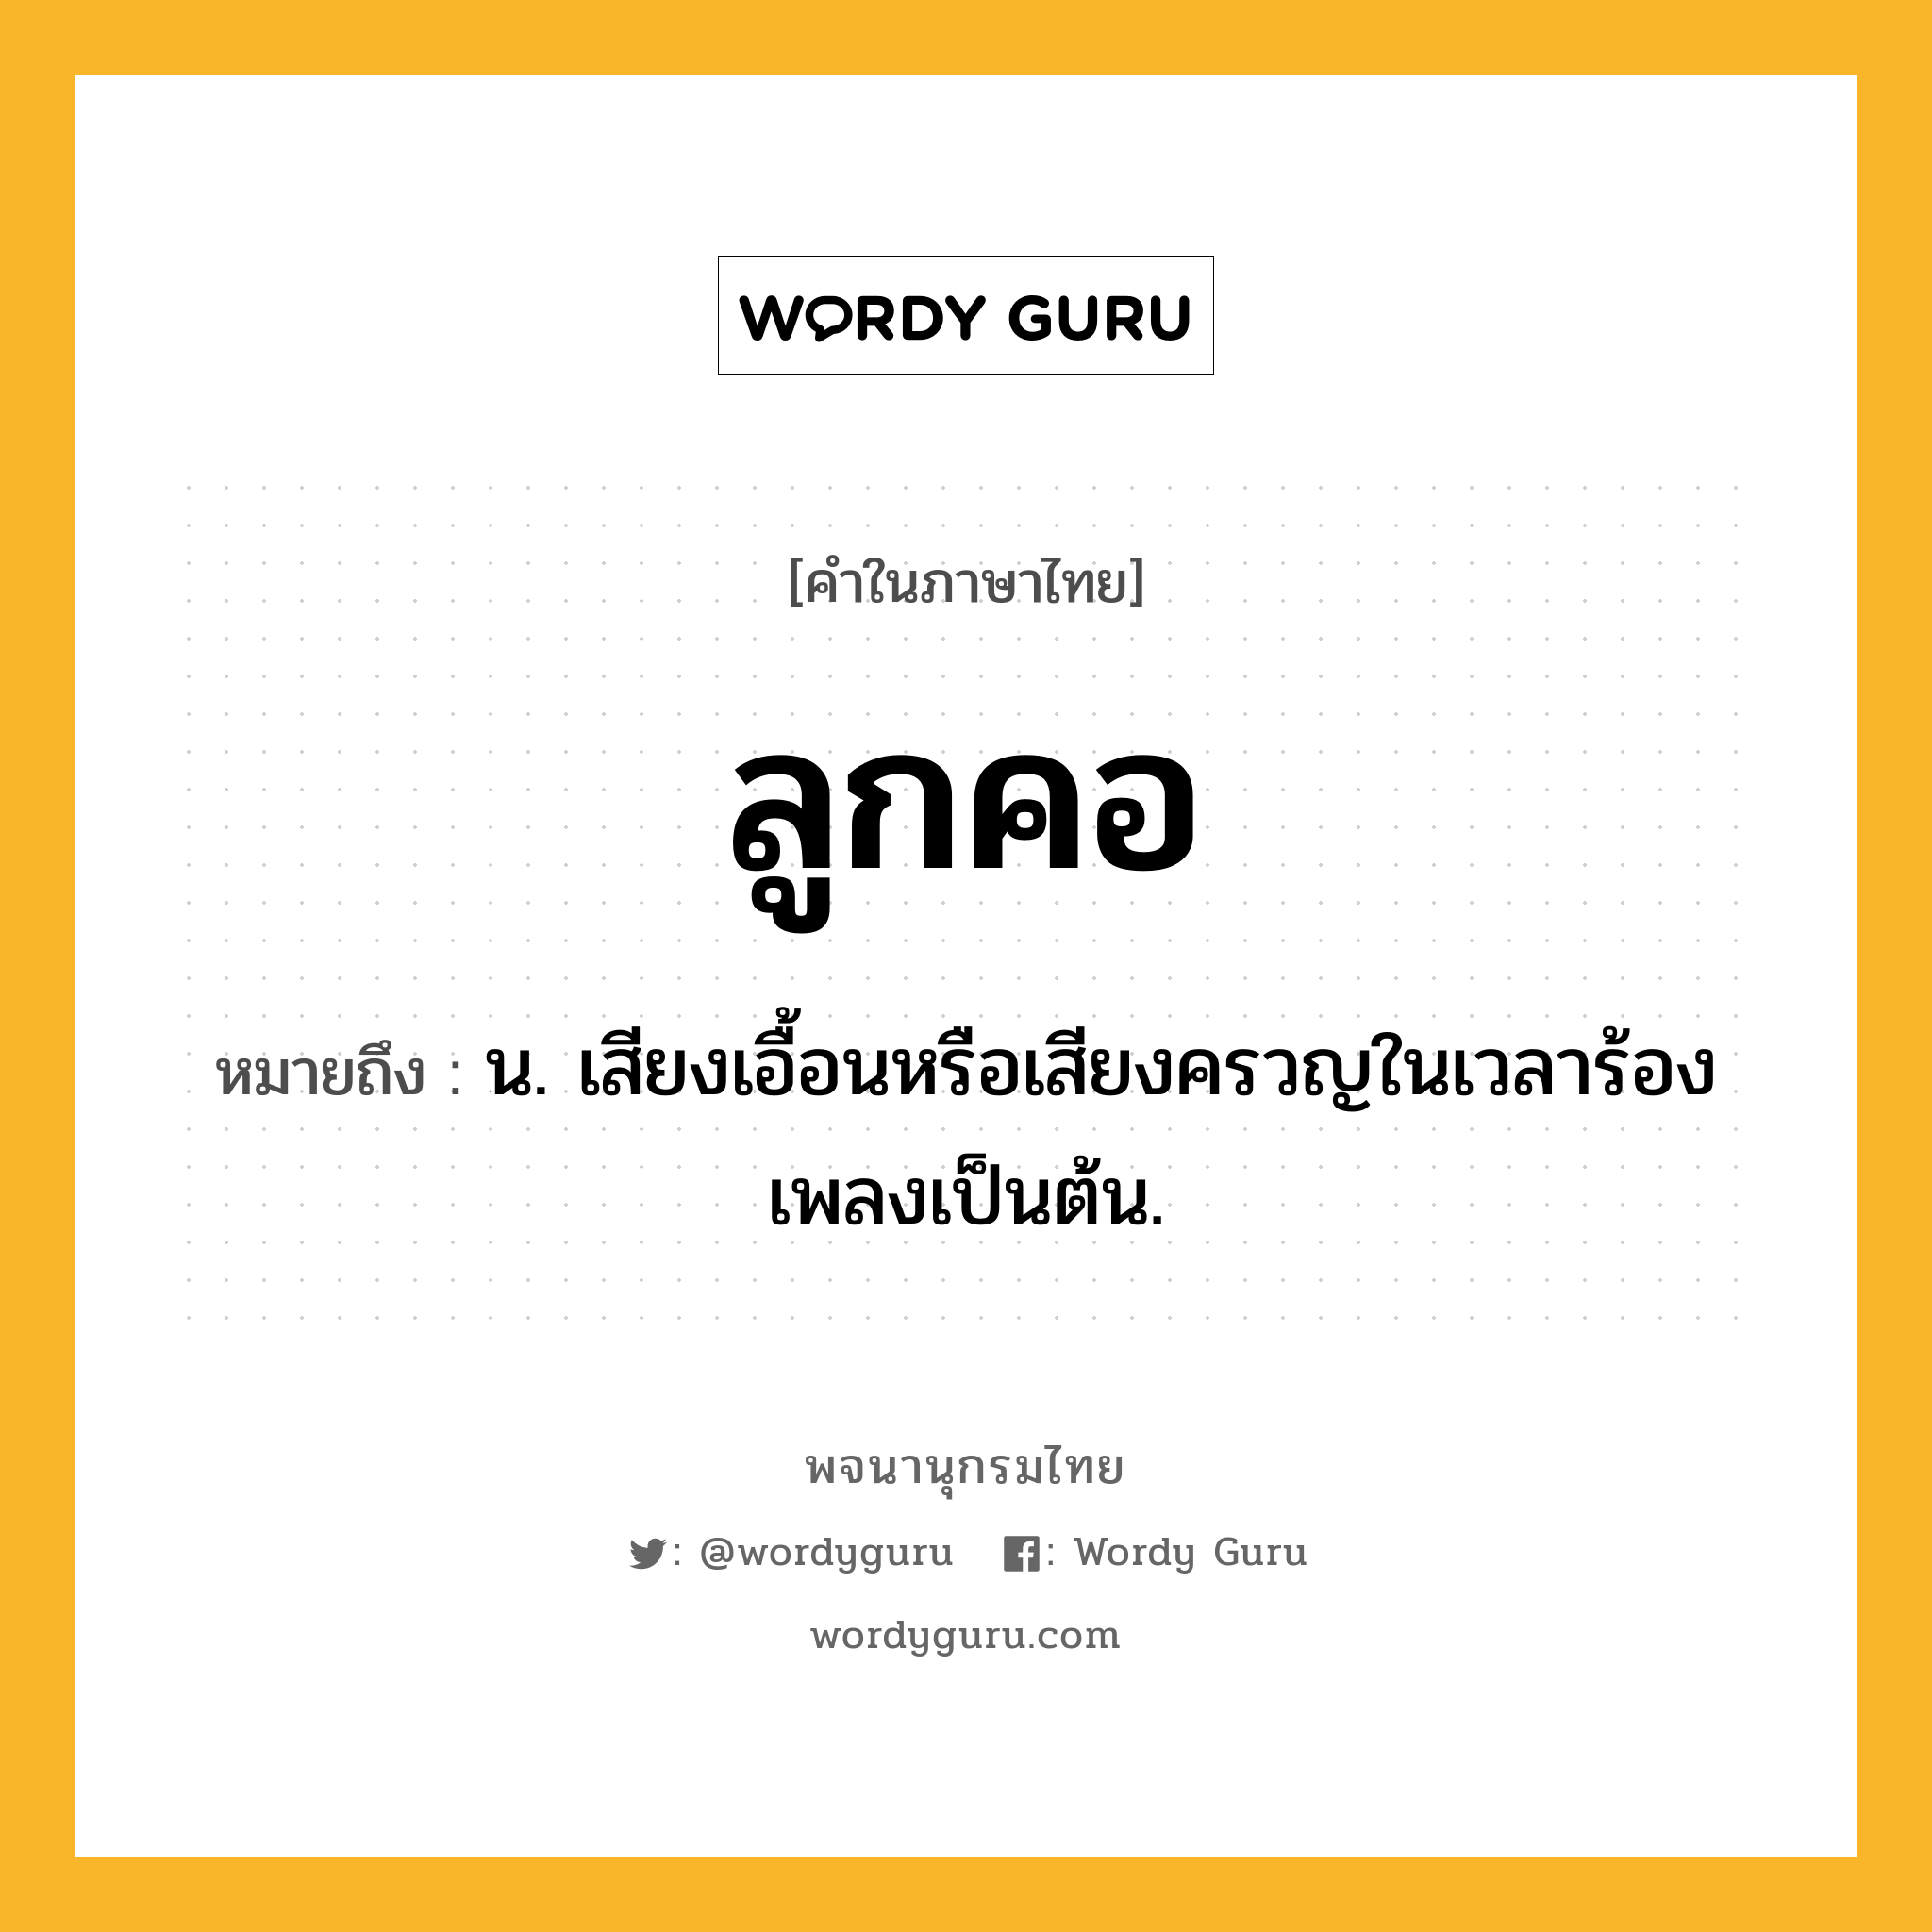 ลูกคอ หมายถึงอะไร?, คำในภาษาไทย ลูกคอ หมายถึง น. เสียงเอื้อนหรือเสียงครวญในเวลาร้องเพลงเป็นต้น.